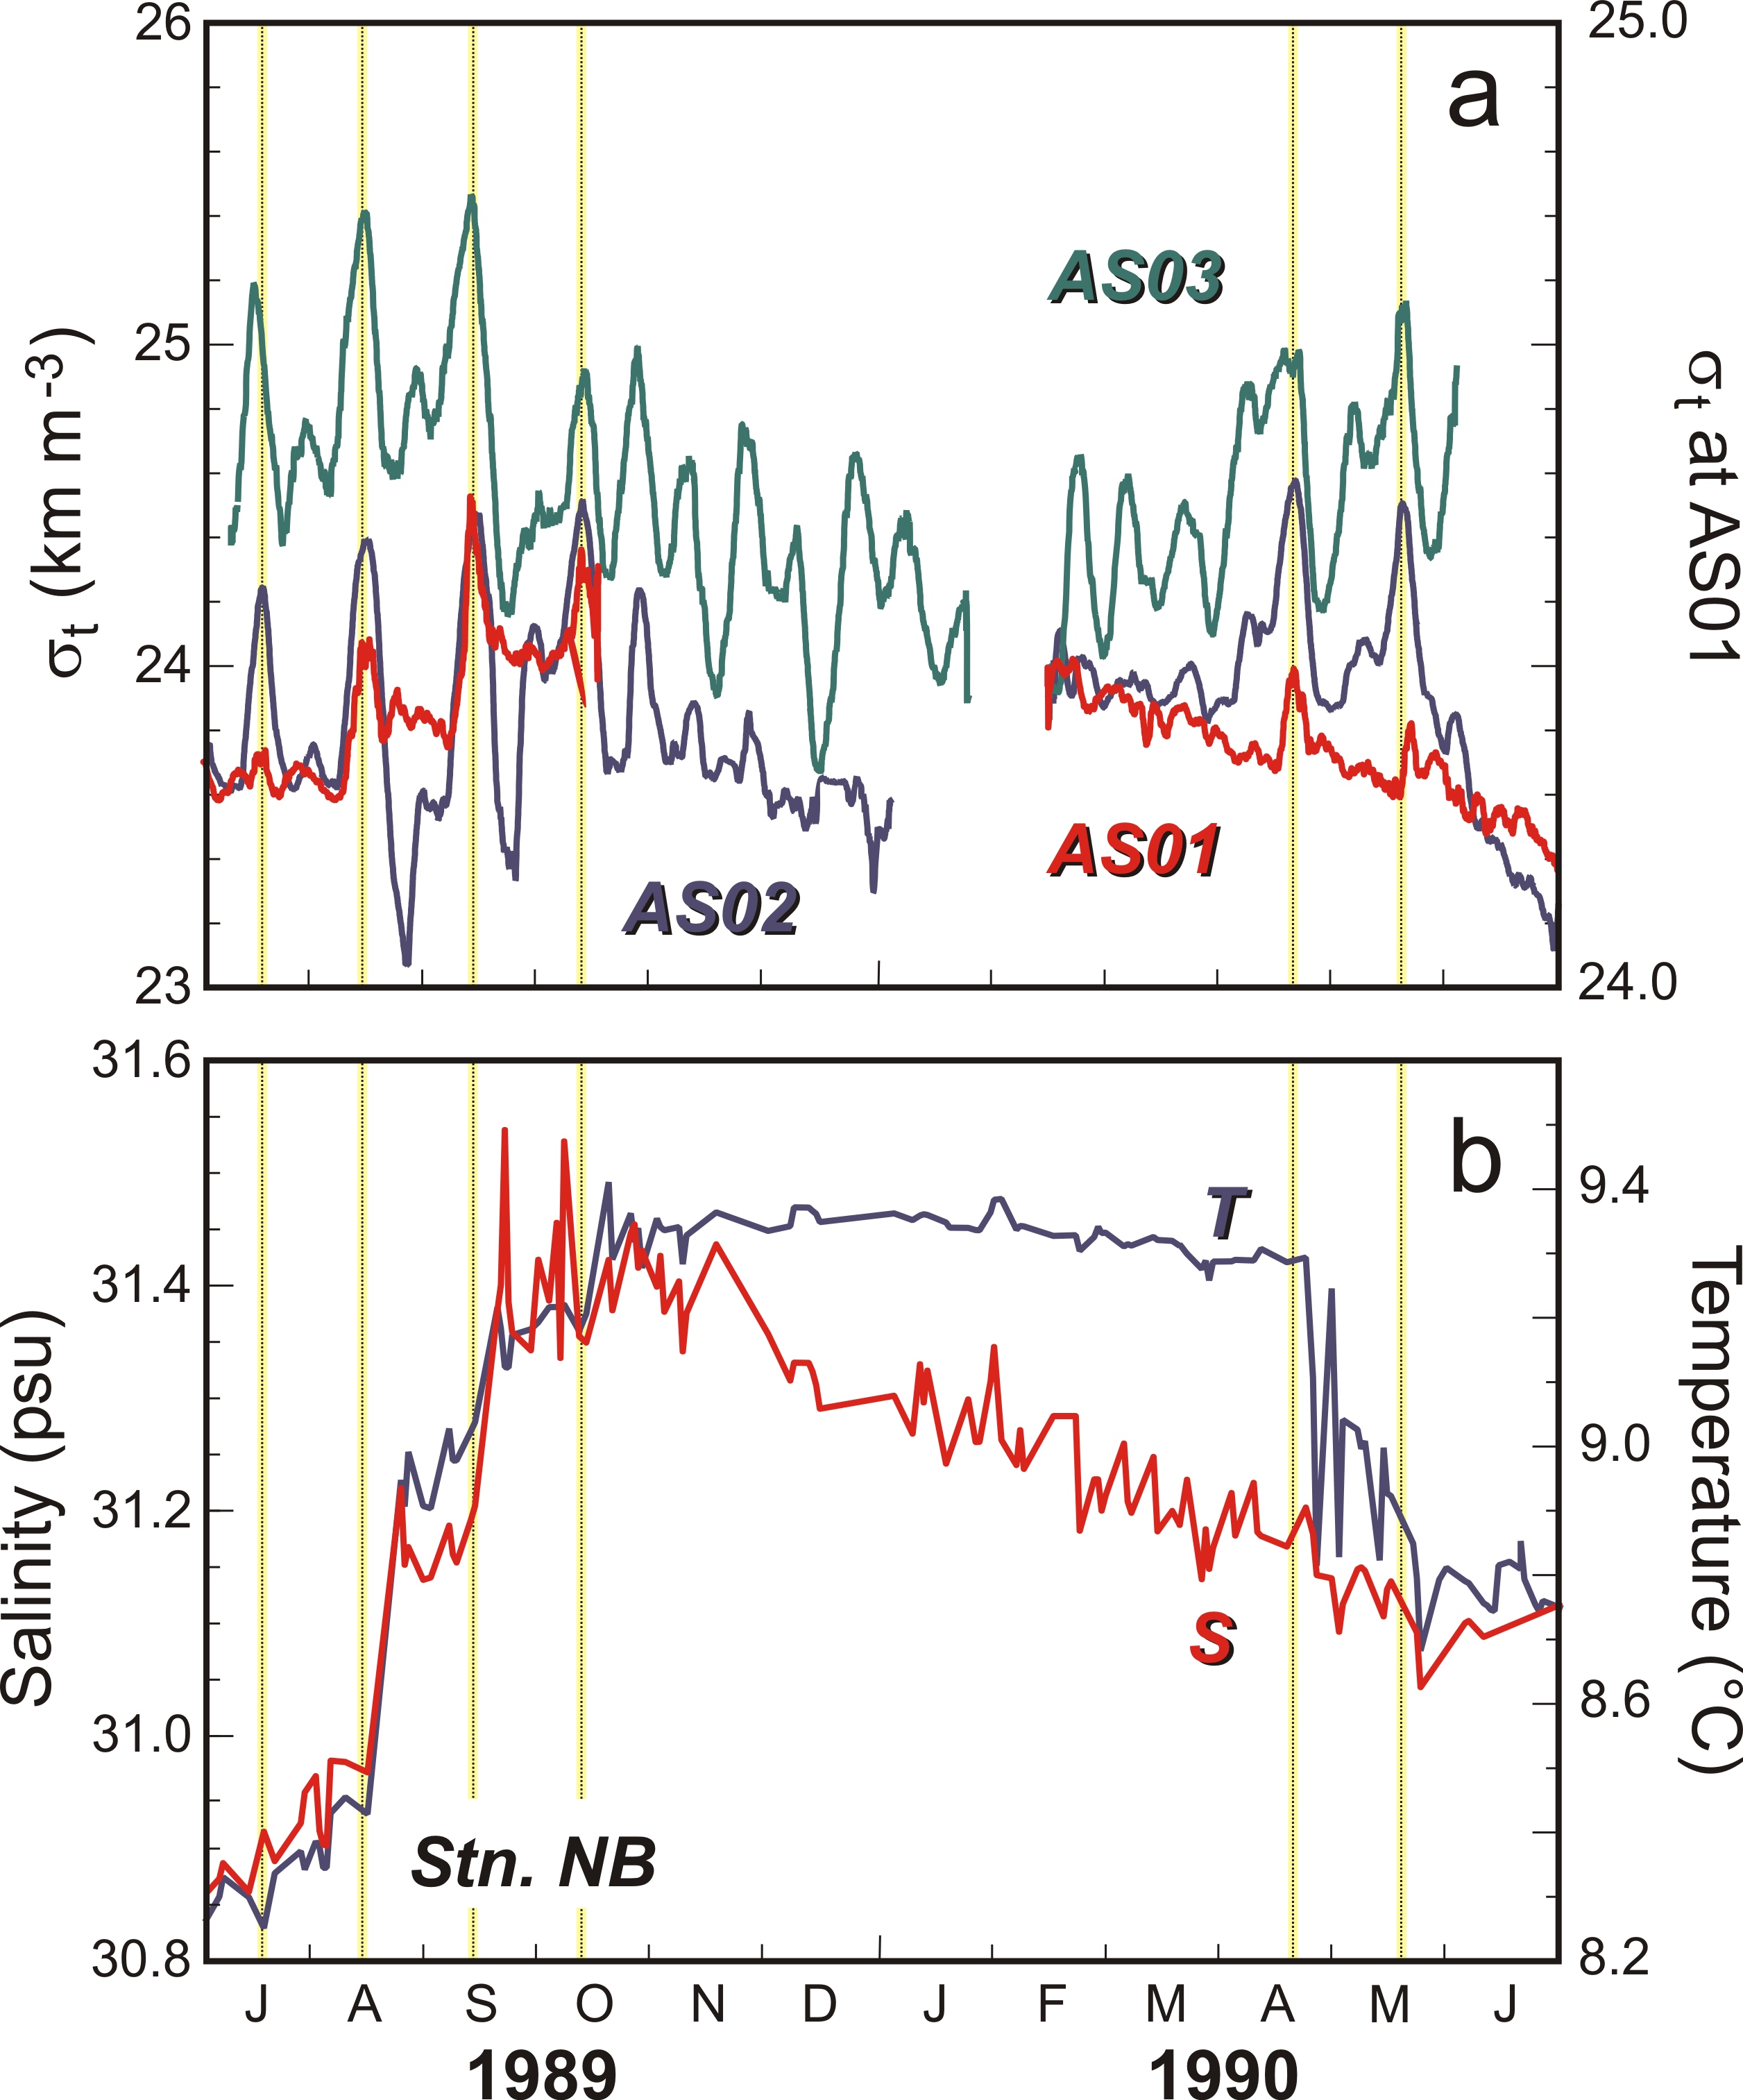 Le panneau supérieur (a) donne une série chronologique de la densité de l'eau de fond à AS02, AS03, et AS01, et le panneau inférieur (b) donne la température et la salinité mesurées près du fond à NB